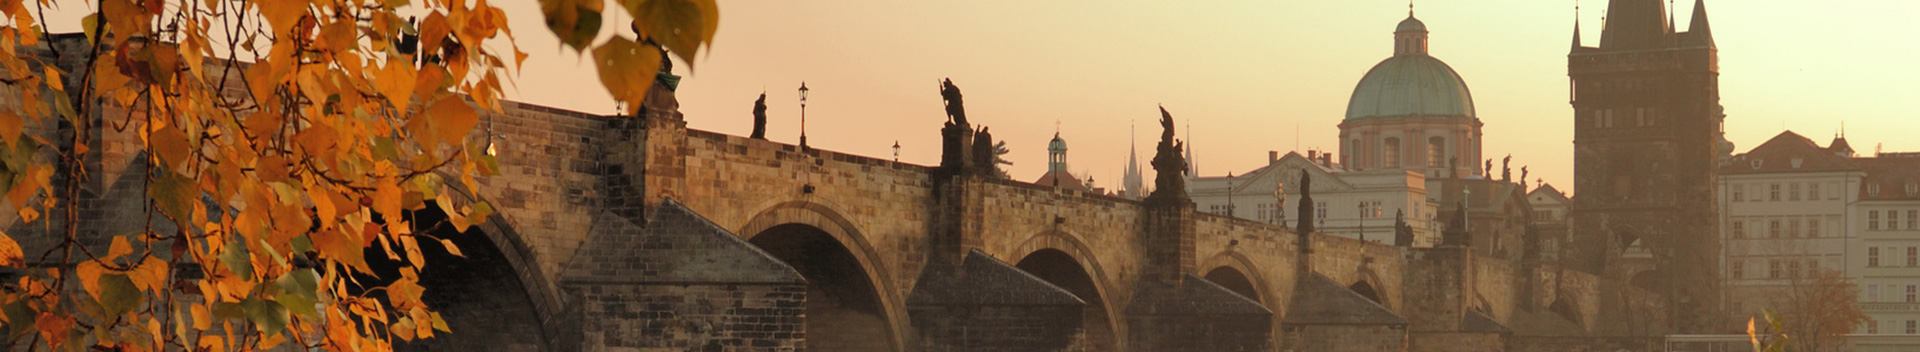 Budapest to Prague – Prague to Budapest – via Bratislava and Lednice Chateau